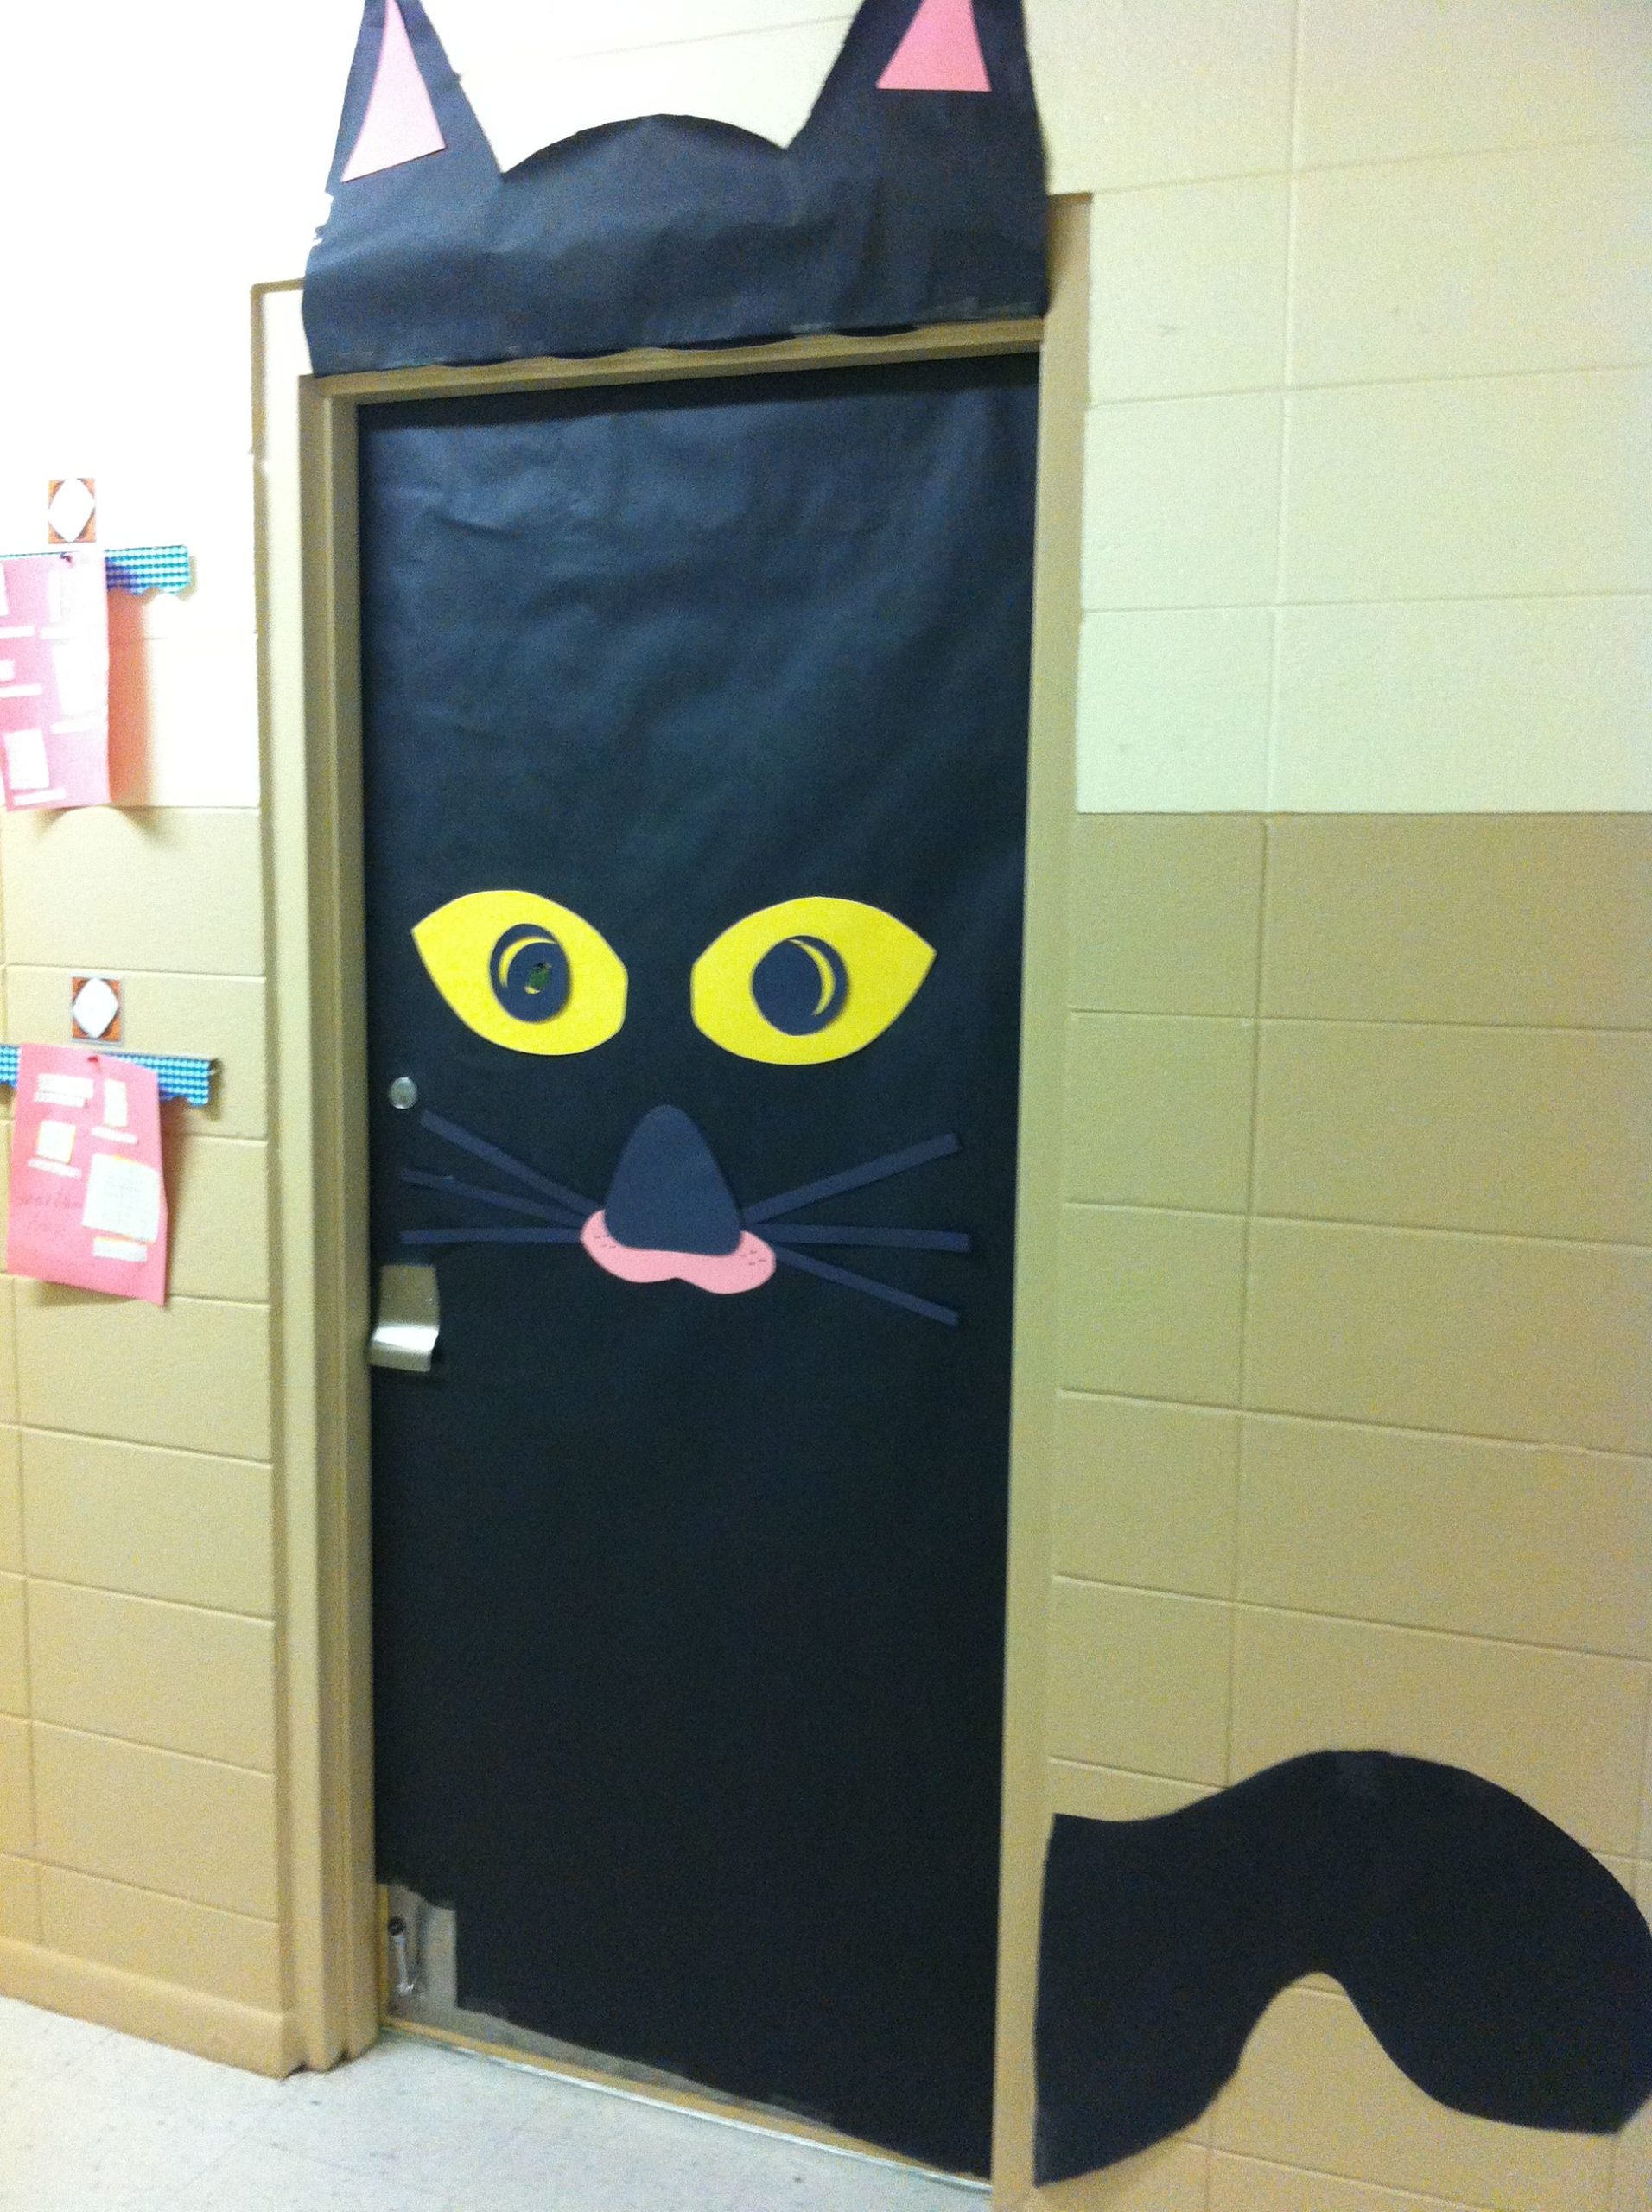  The cat's door